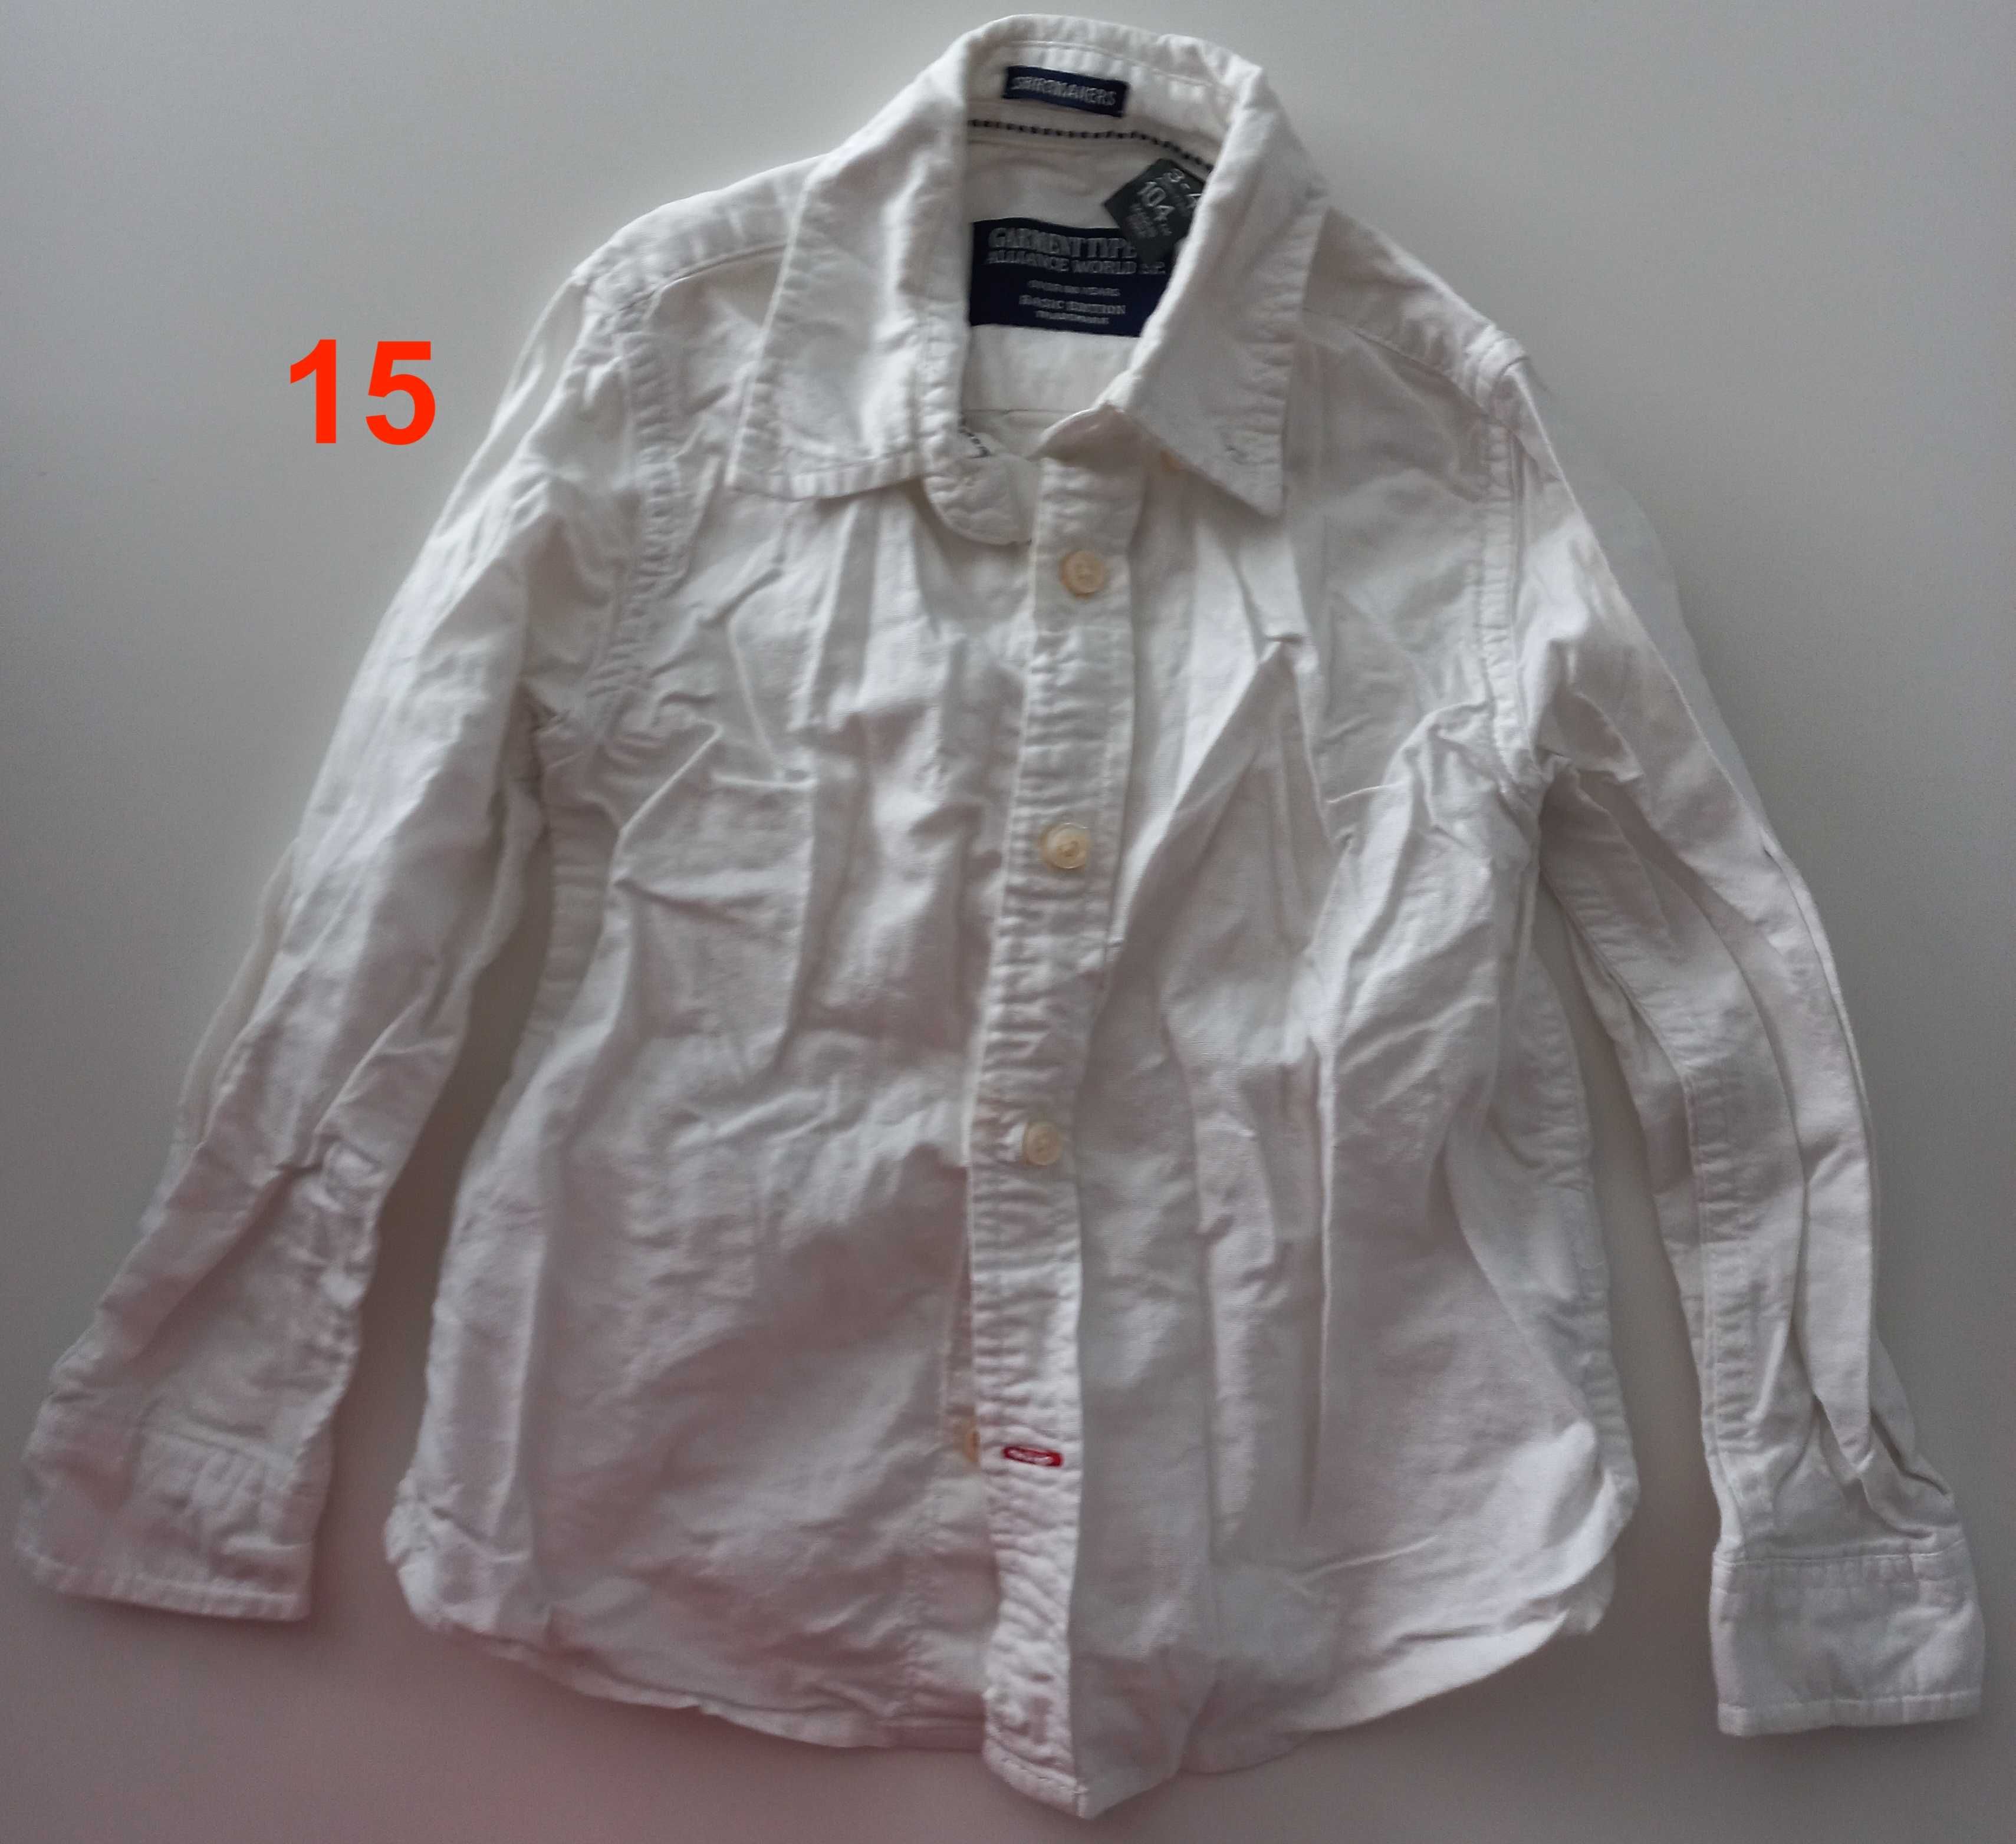 Camisolas e camisa (pack 5) (24-36 meses / 2-3 anos)